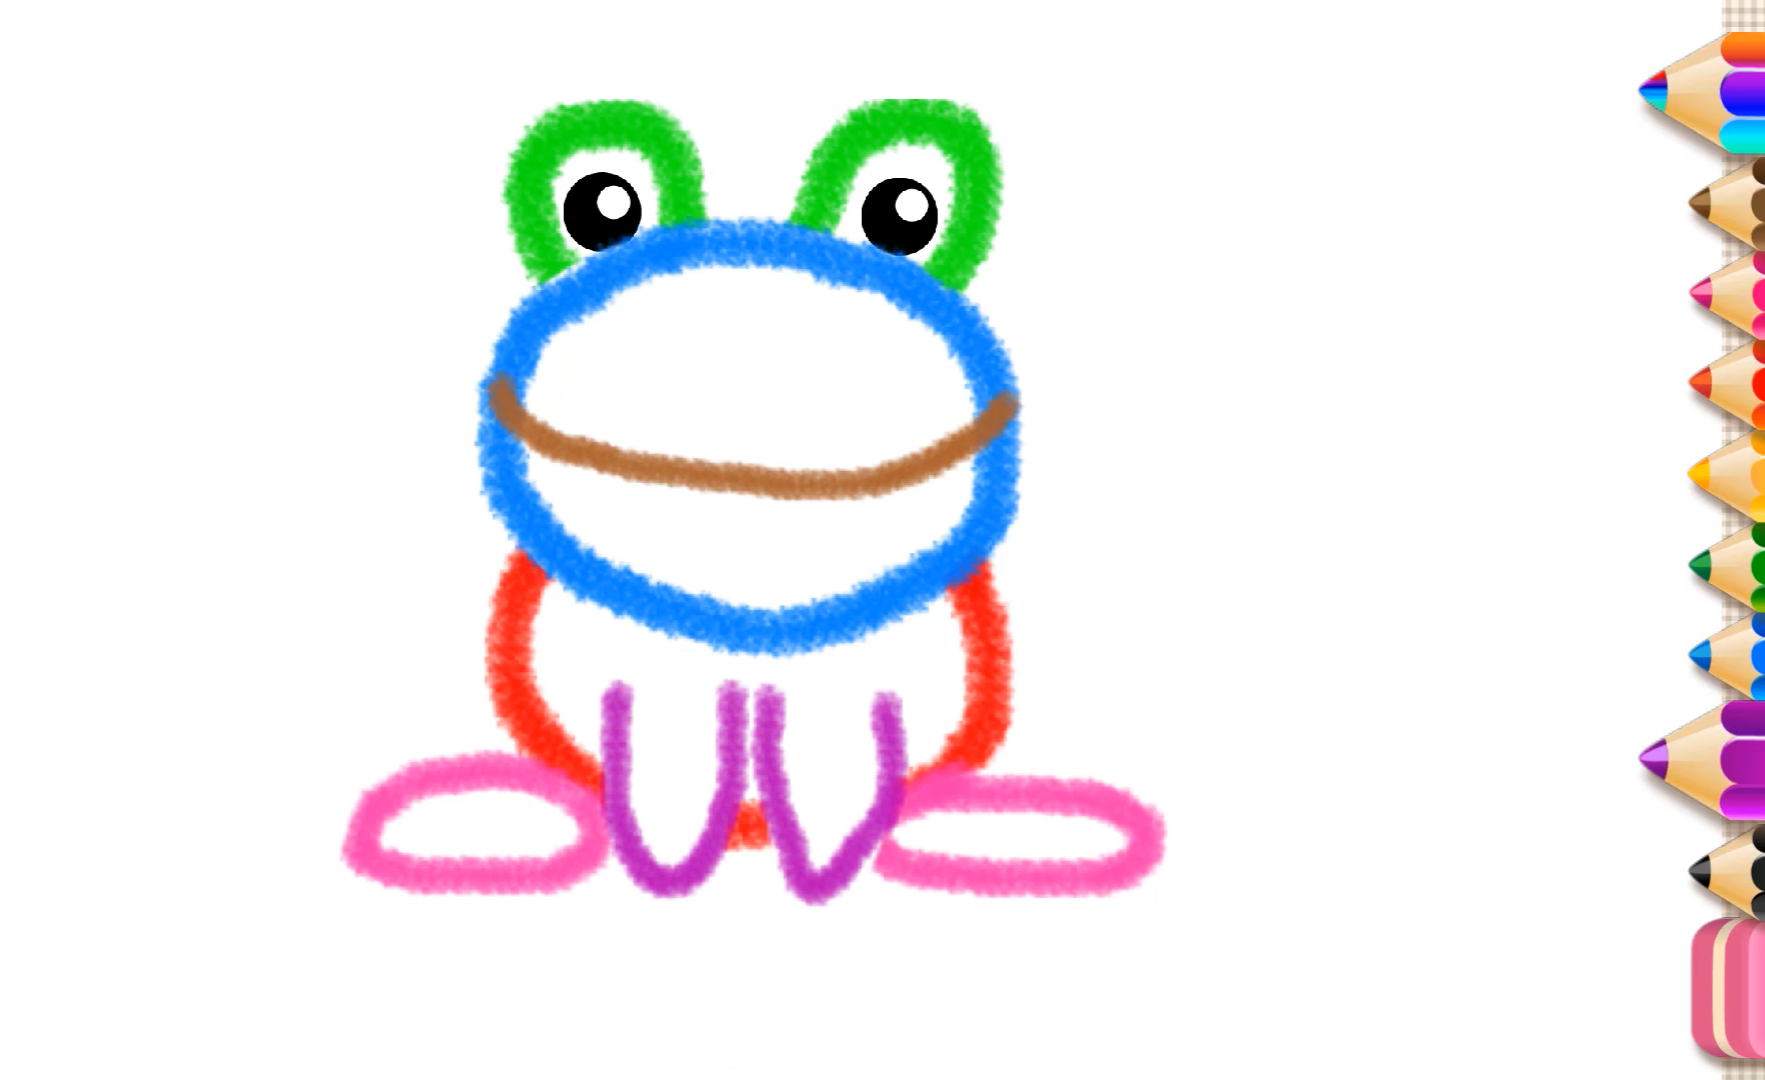 大嘴蛙简笔画图片